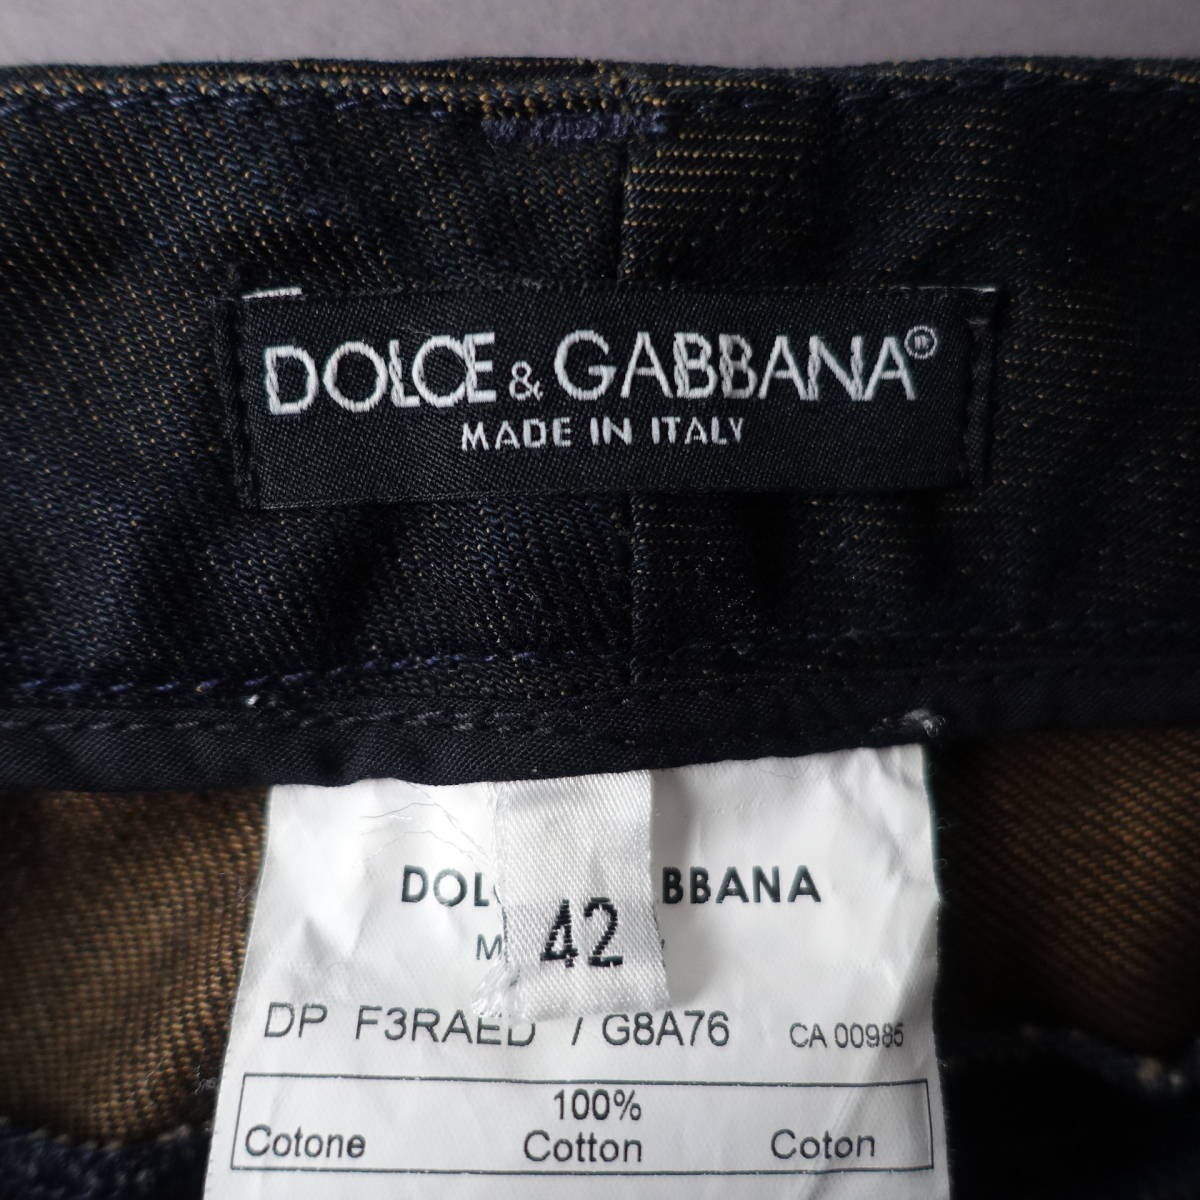 DOLCE&GABBANA/ Dolce & Gabbana / Dolce&Gabbana /42/ Италия производства / Denim брюки / черный / чёрный / джинсы 